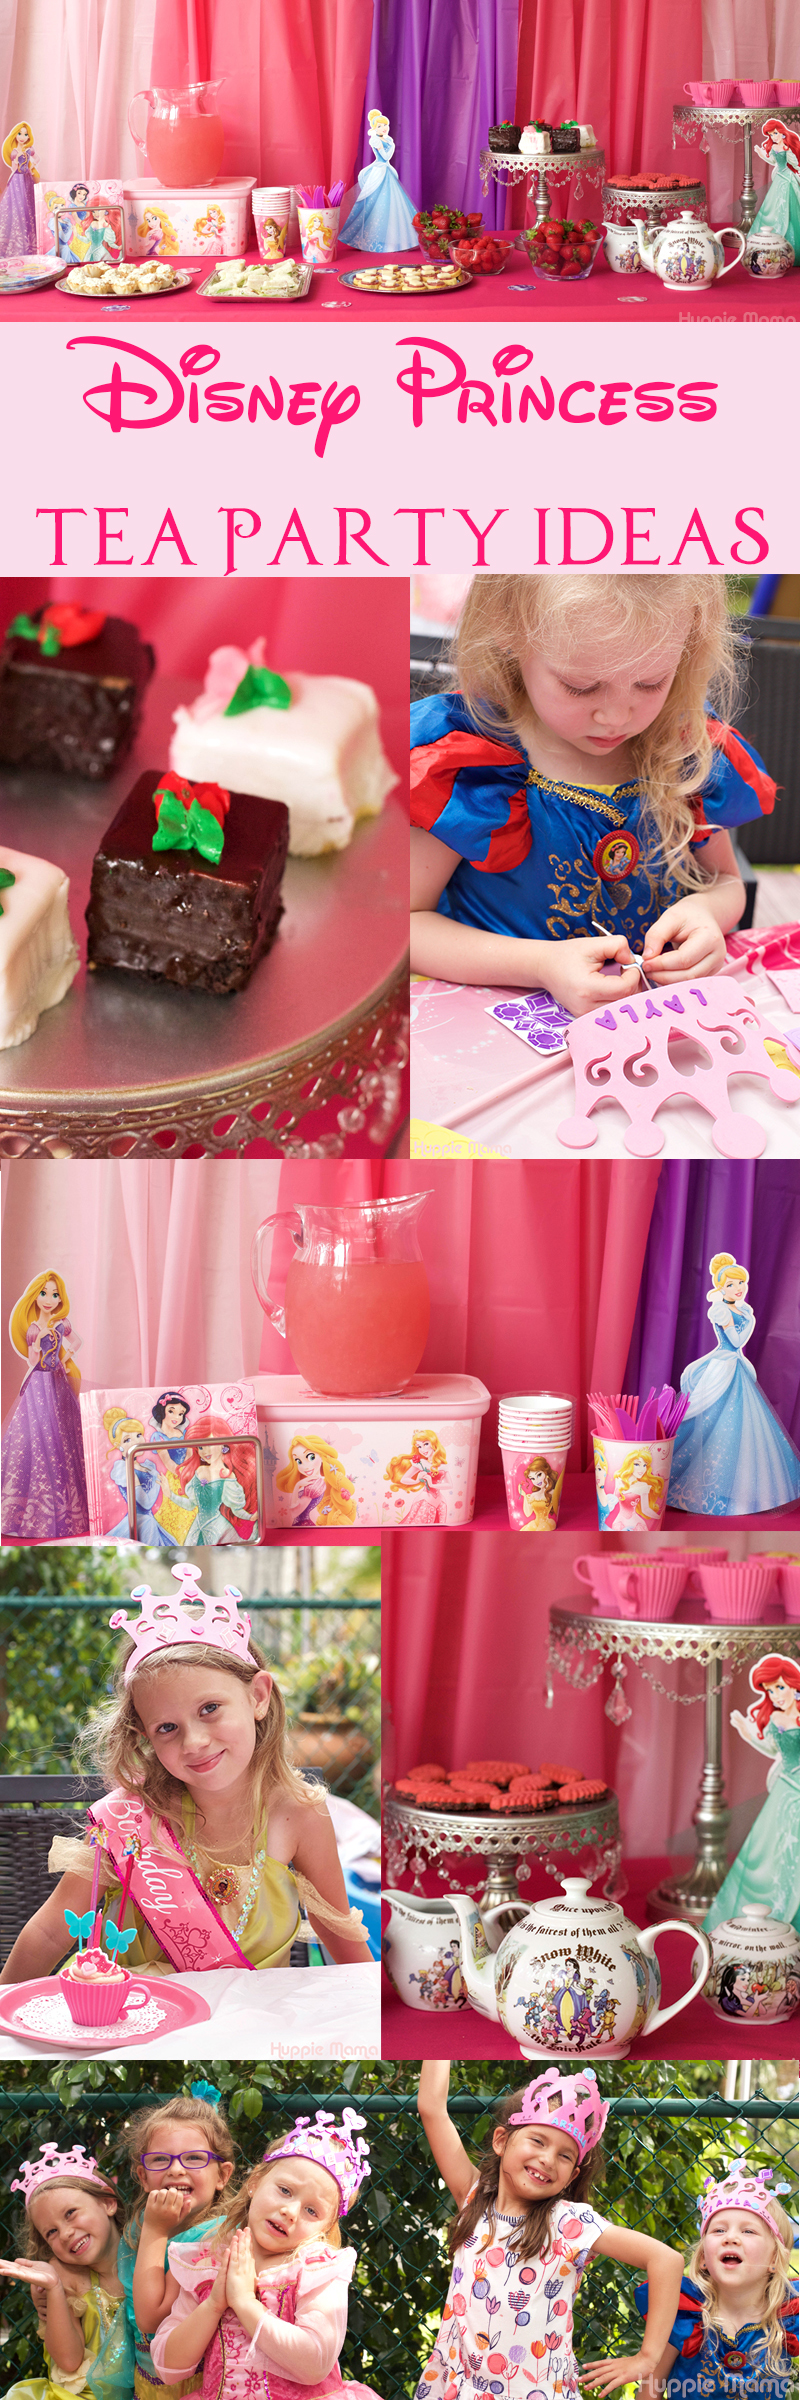 Disney Princess Tea Party Ideas Our Potluck Family